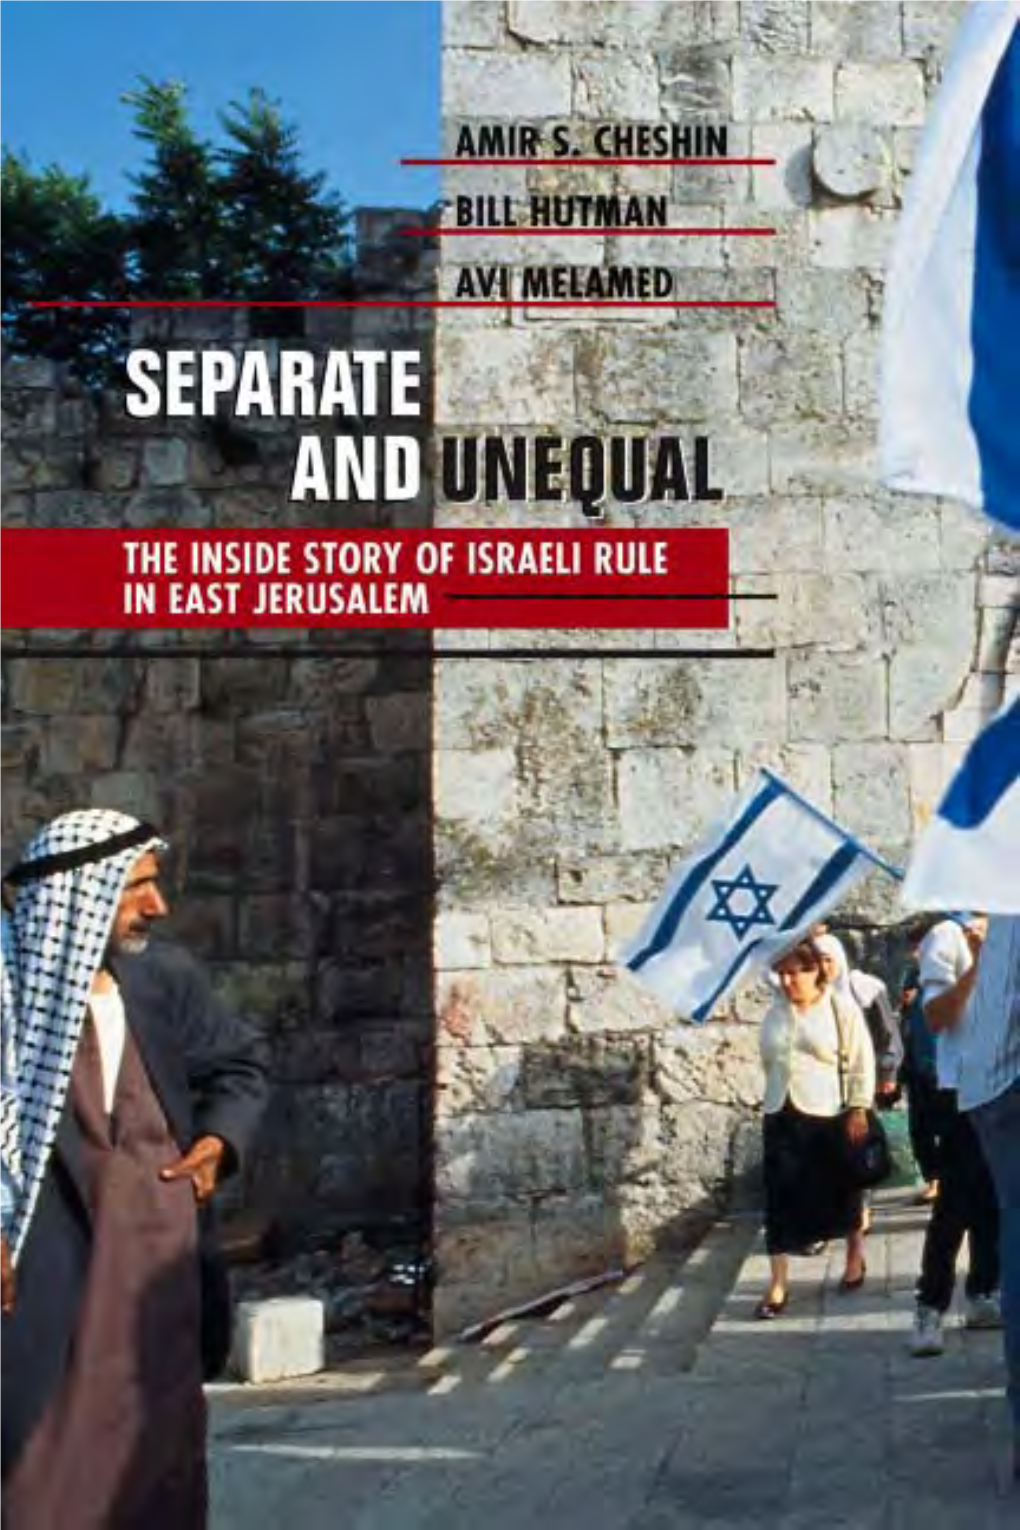 The Inside Story of Israeli Rule in East Jerusalem